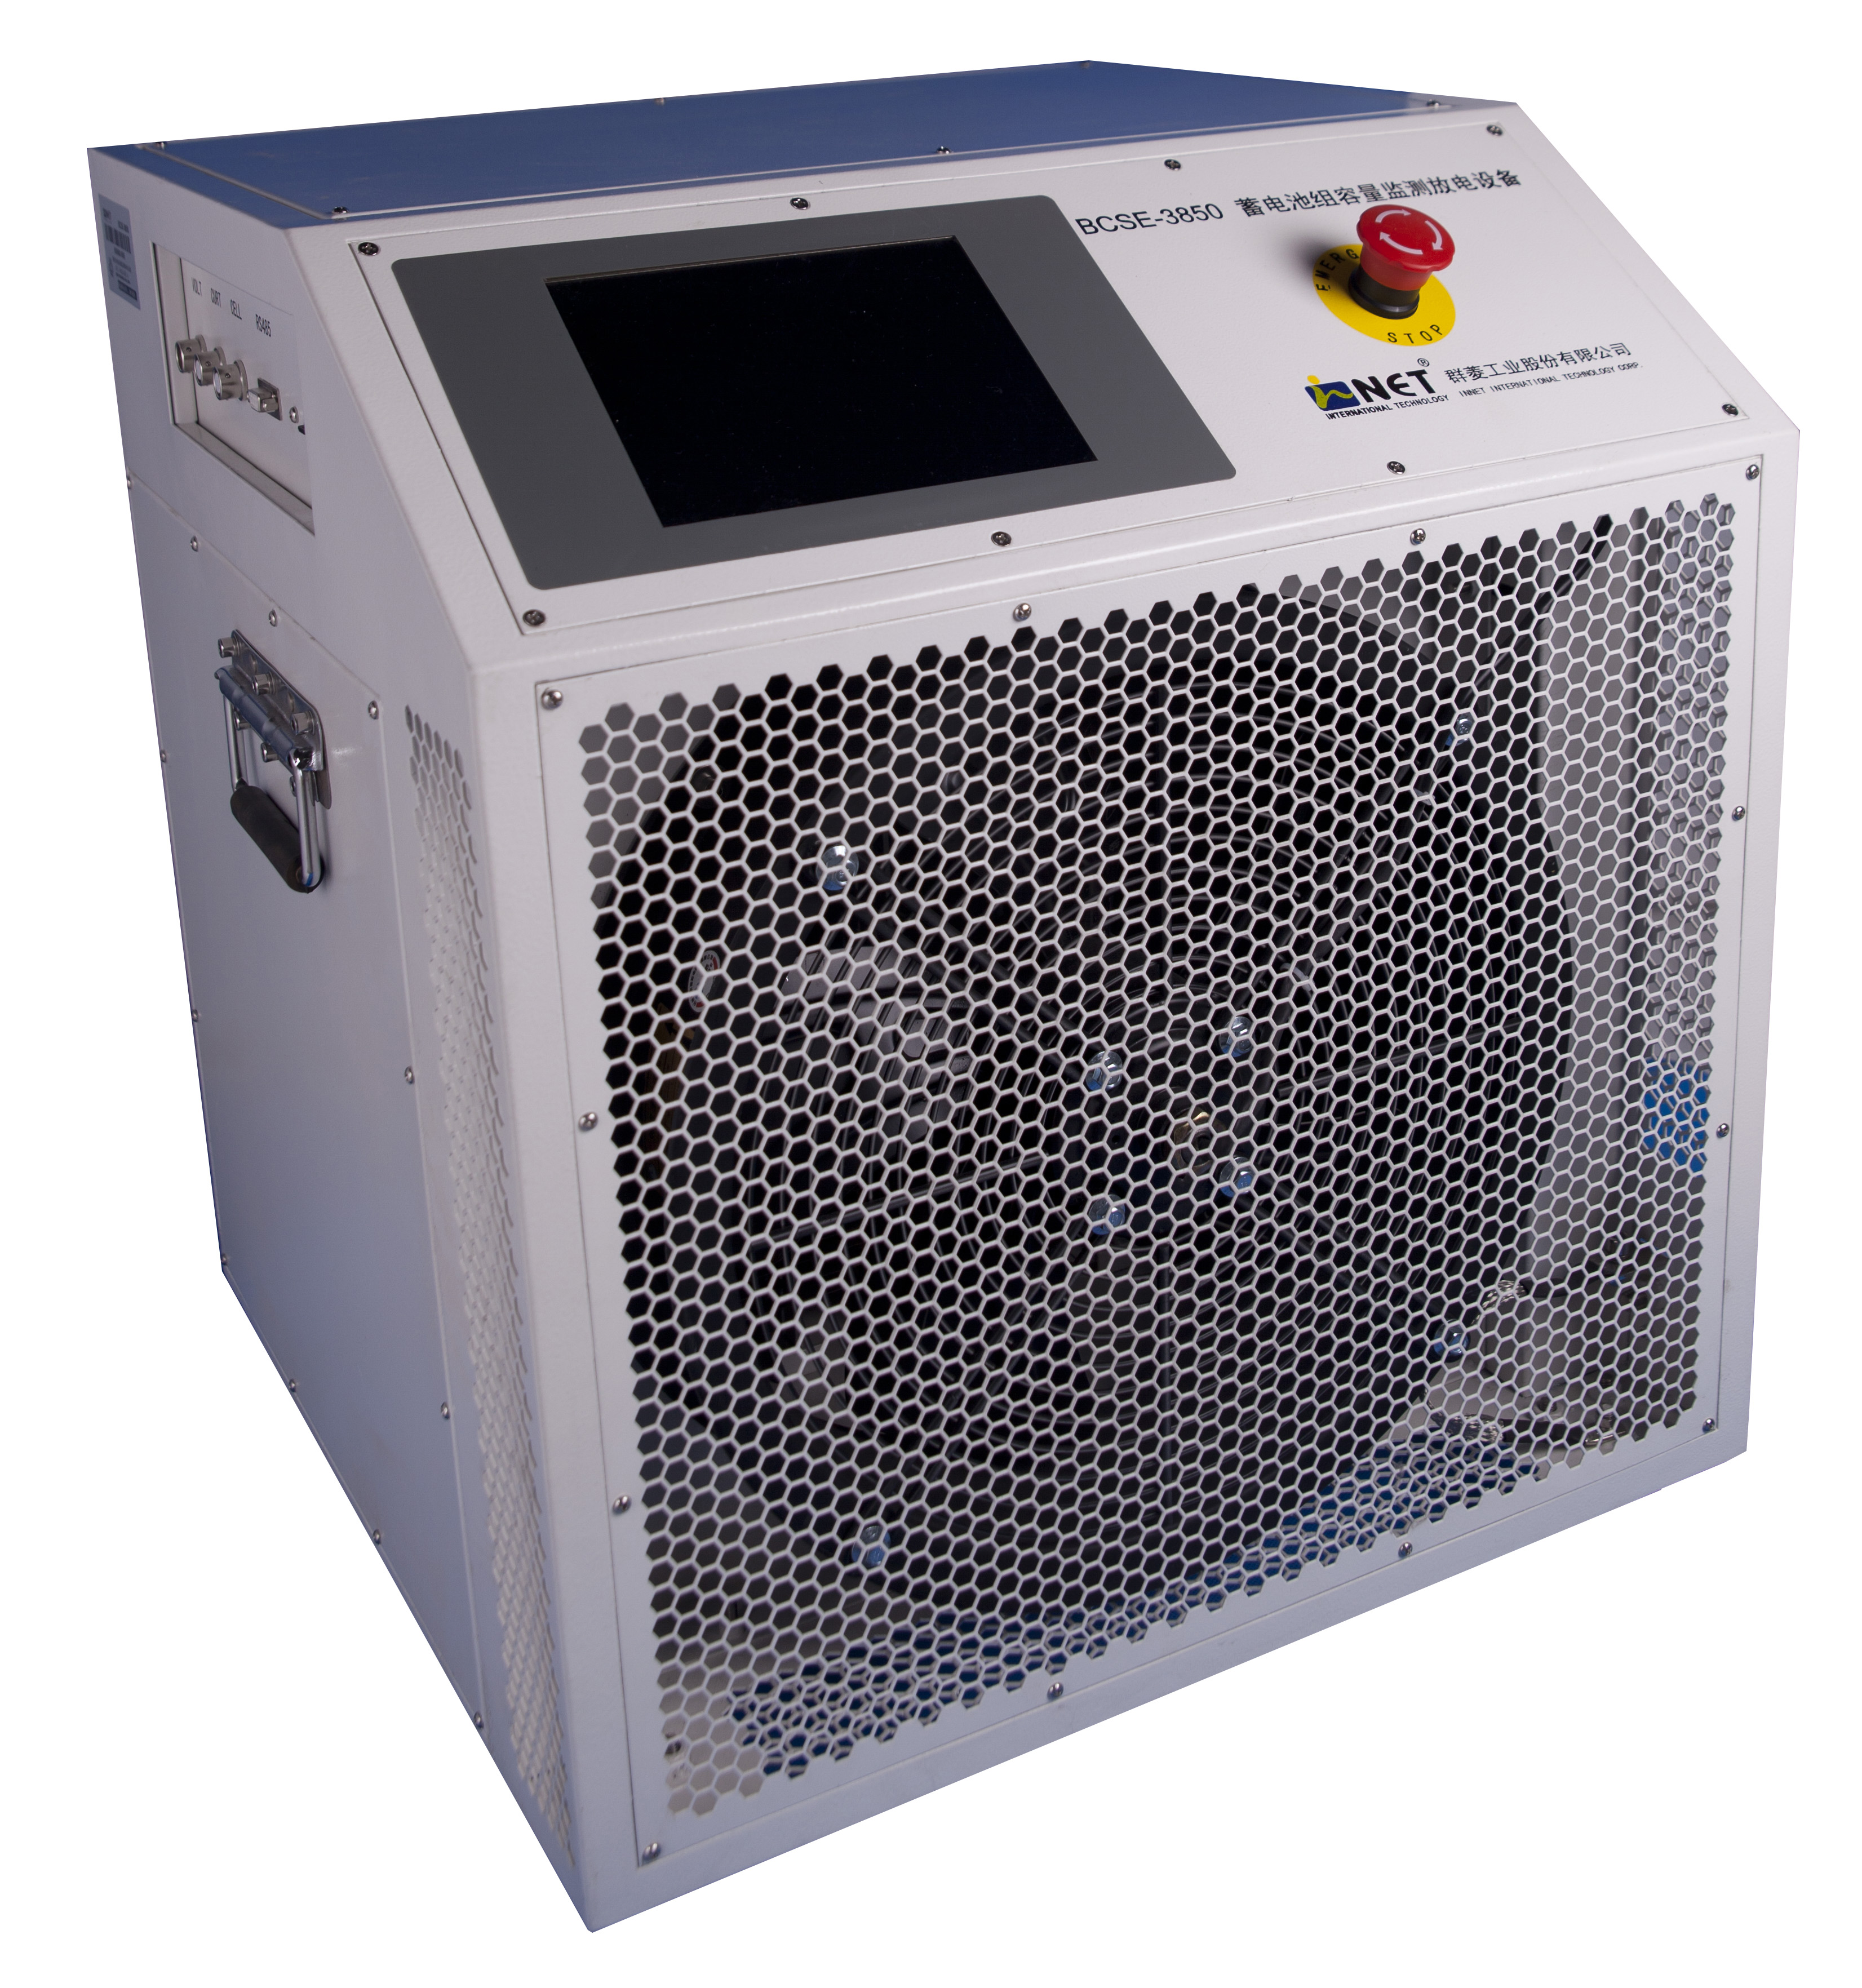 UPS蓄电池组充放电容量测试设备 DCLT-3850